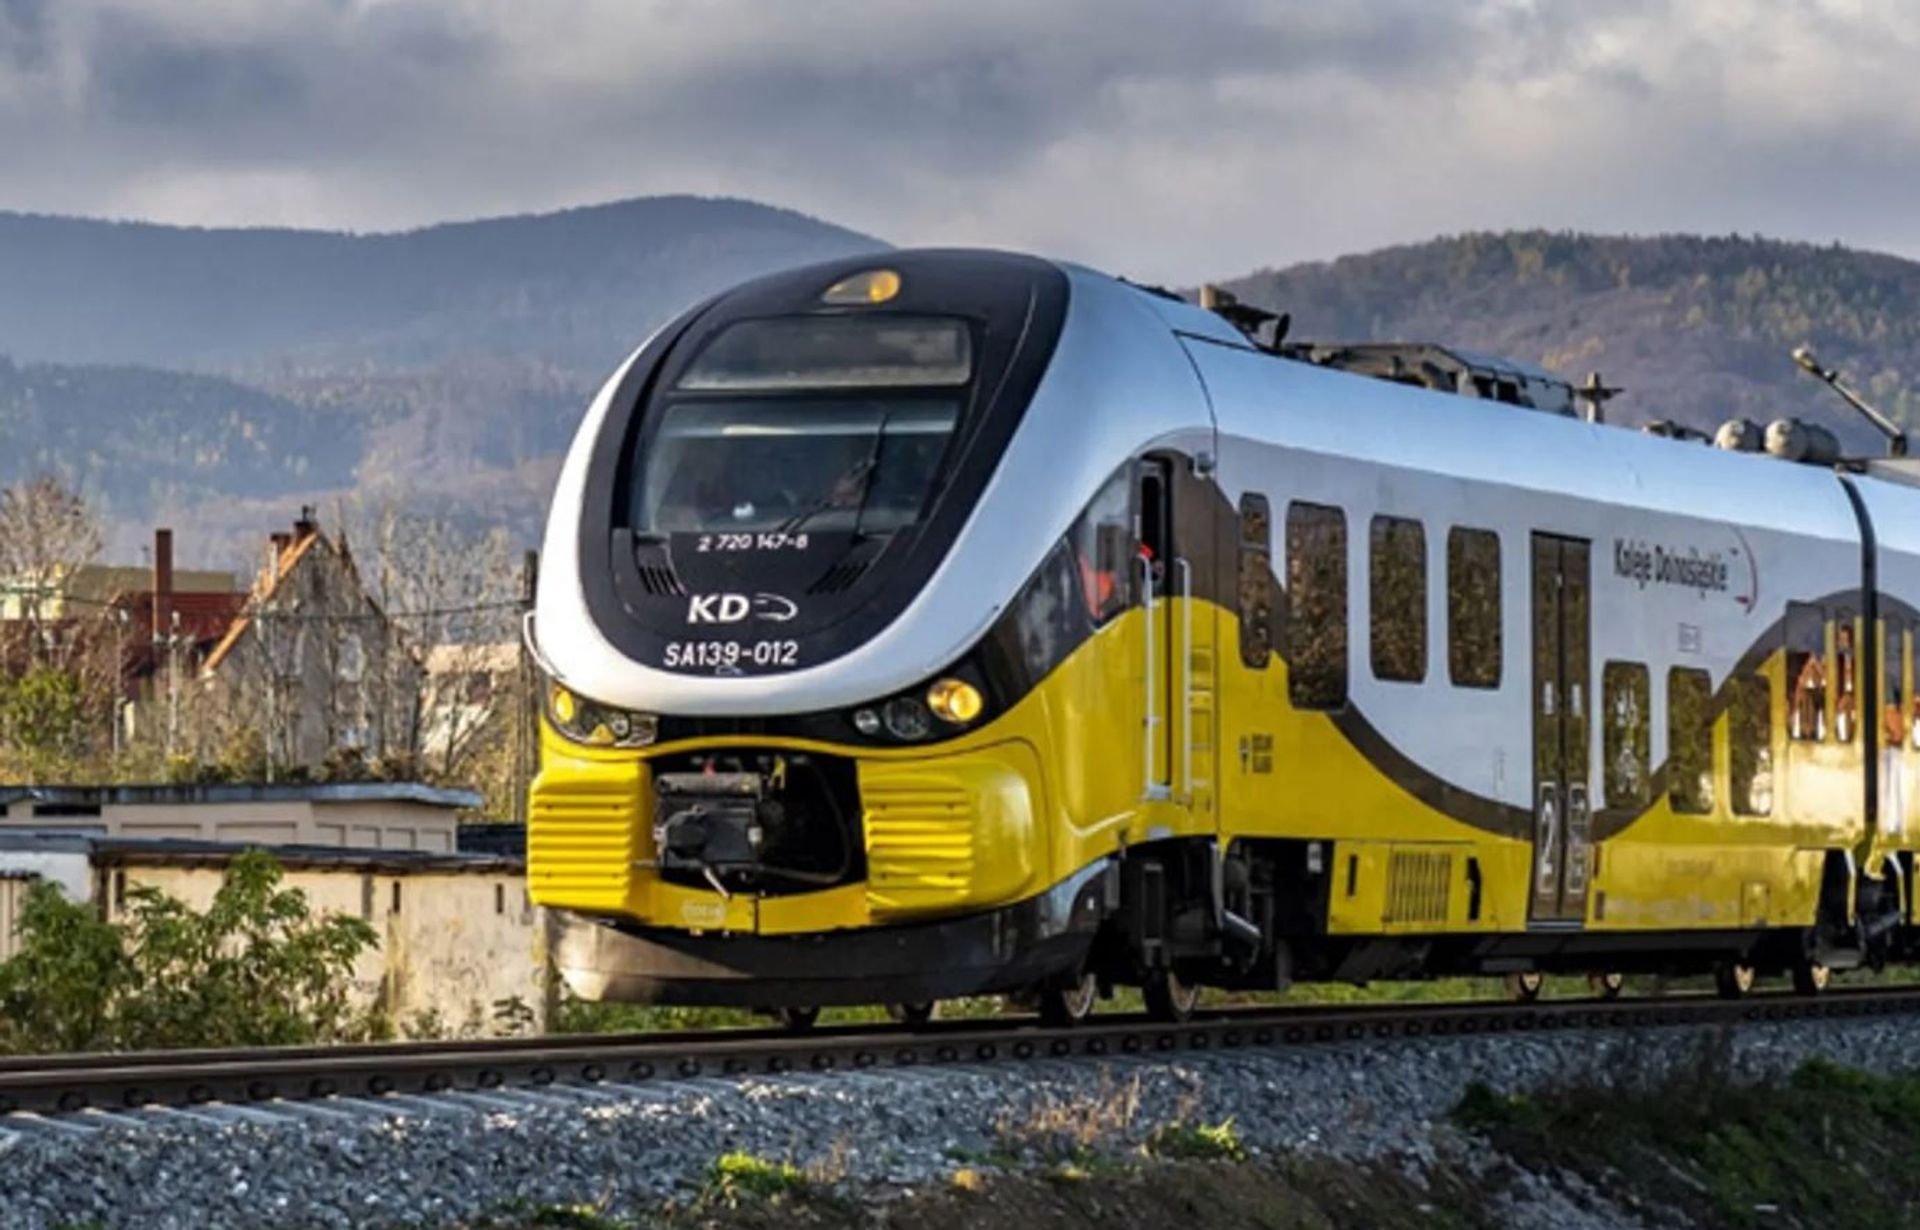 DSDiK ogłosiła przetarg na rewitalizację fragmentu linii kolejowej 308 z Jeleniej Góry do Mysłakowic